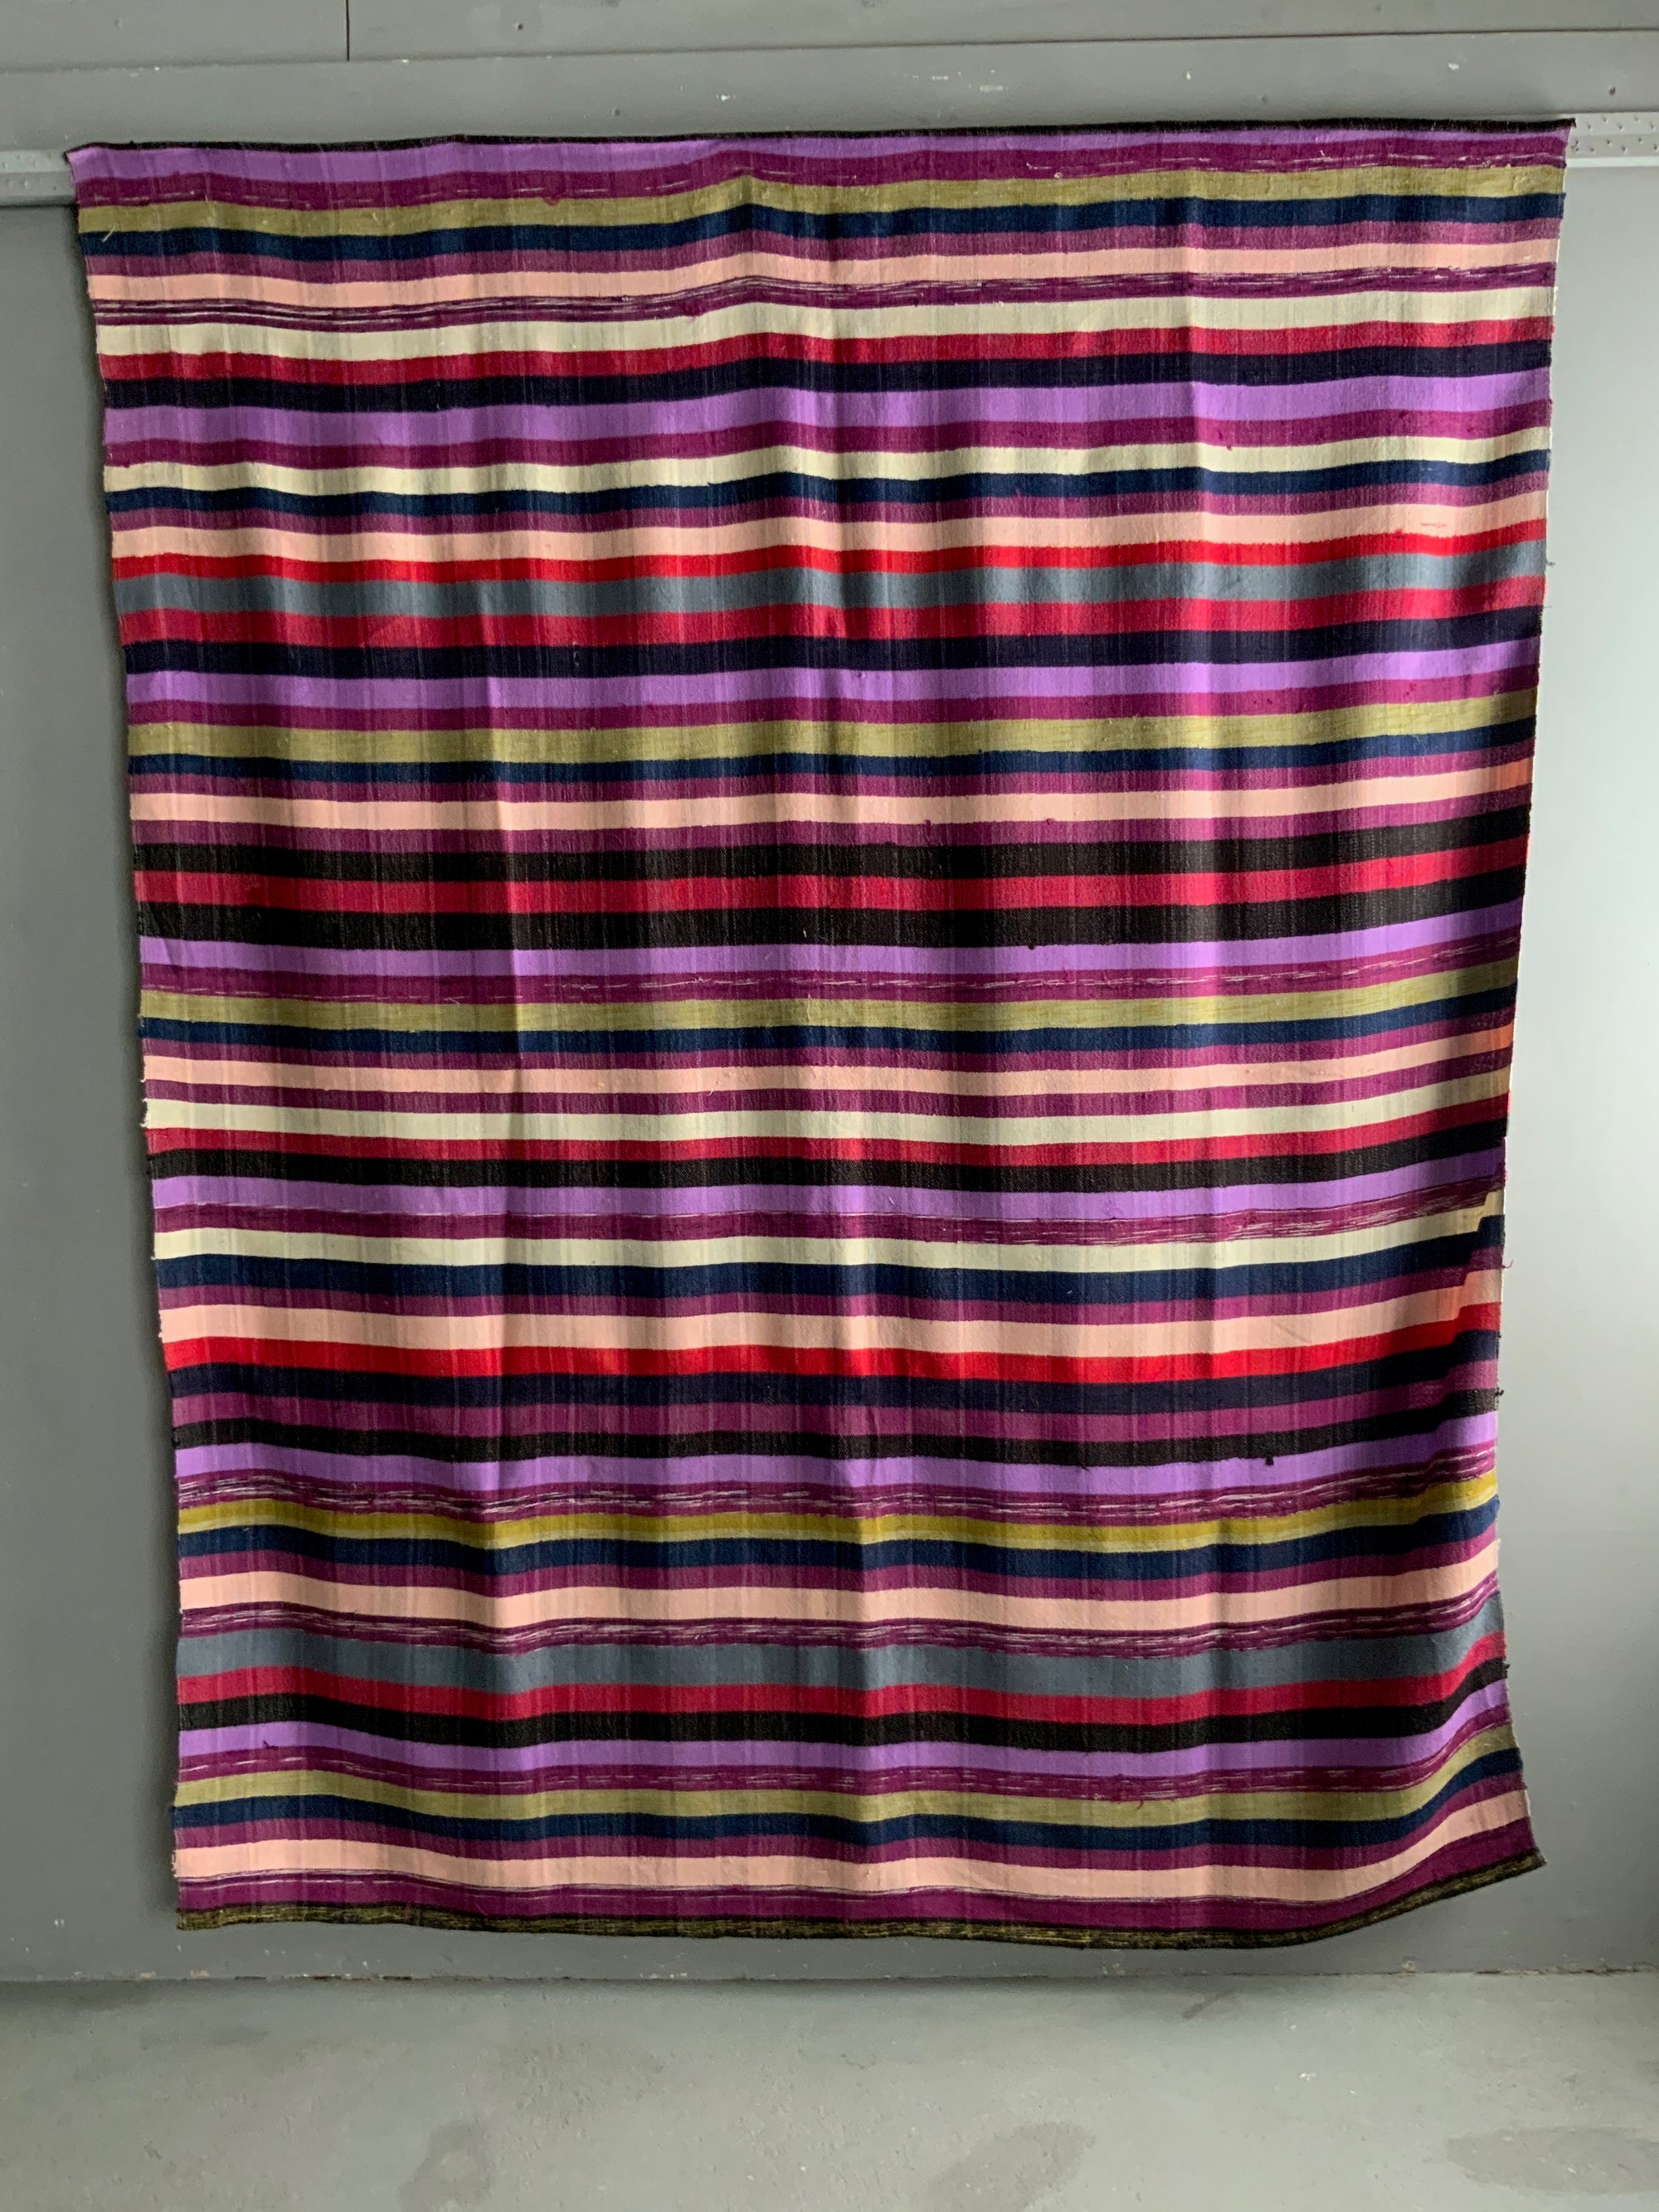 Turkish plainweave vintage mercerised cotton blanket / throw (228 x 182cm)